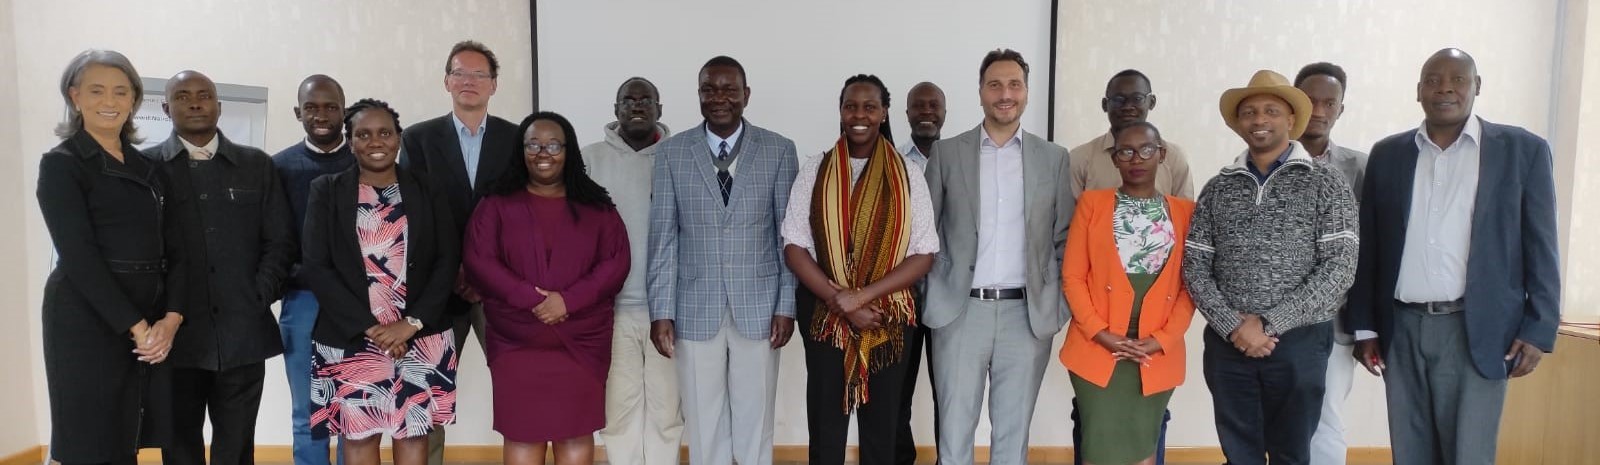 Mission de terrain au Kenya des experts du Mécanisme de soutien aux politiques (MSP)